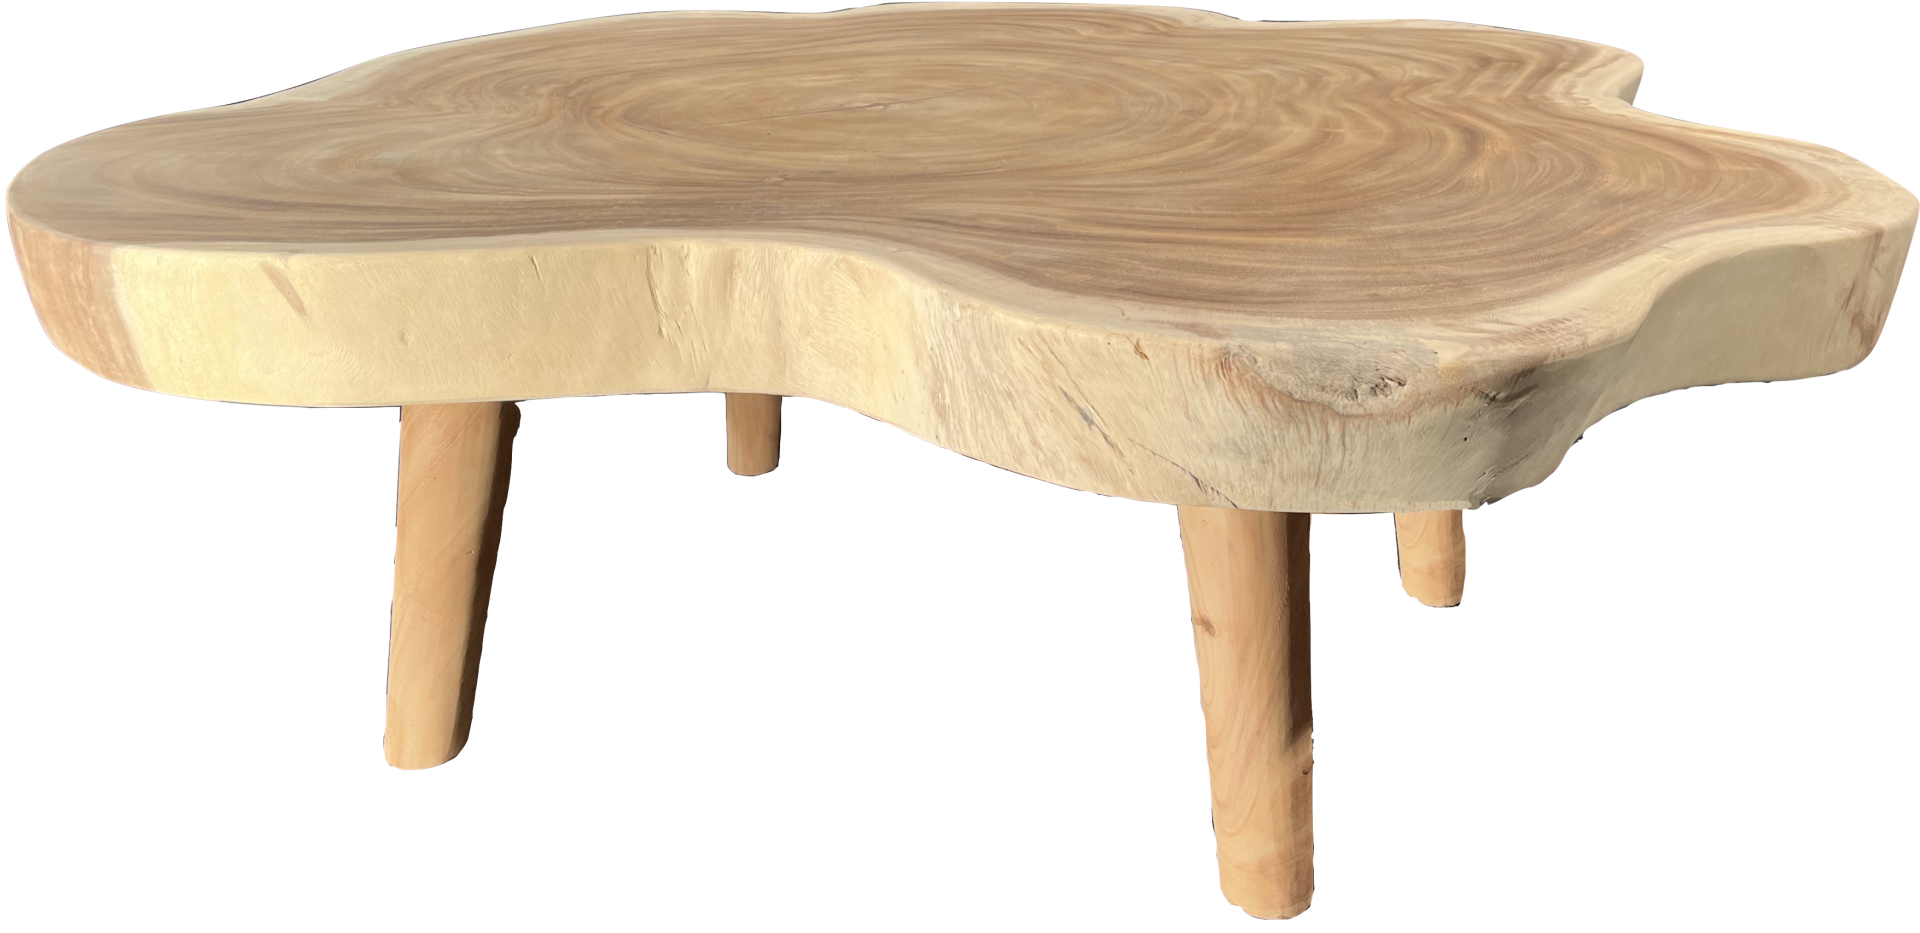 FaKOPA s. r. o. TRUNK - konferenční stolek ze suaru 145 x 147 cm, suar